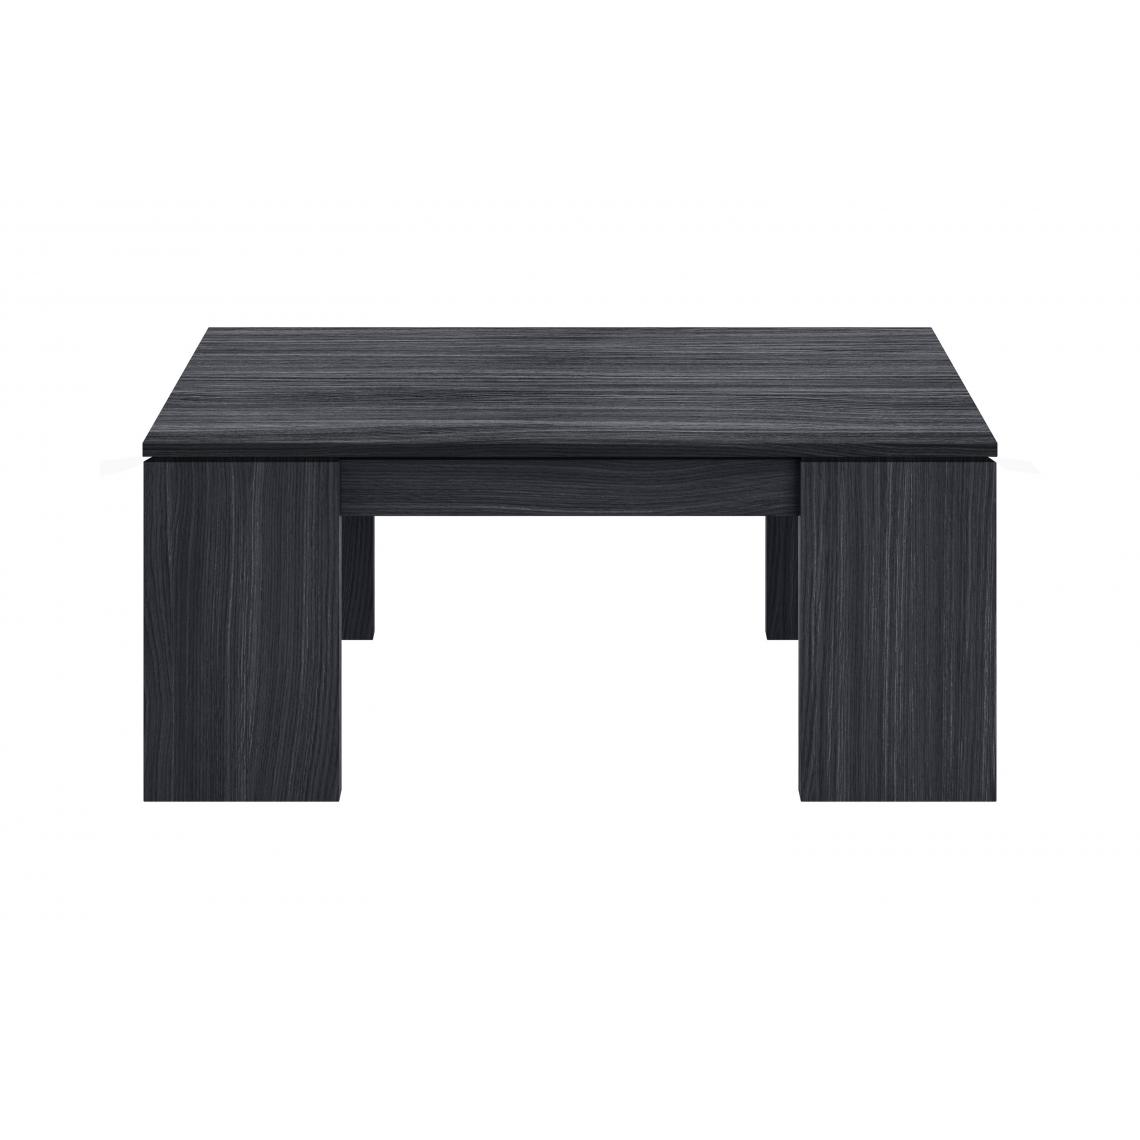 Alter - Table basse avec plateau relevable et rangements, coloris gris cendré, 100 x 43 x 50 cm (hauteur réglable de 43 à 54 cm). - Porte-revues